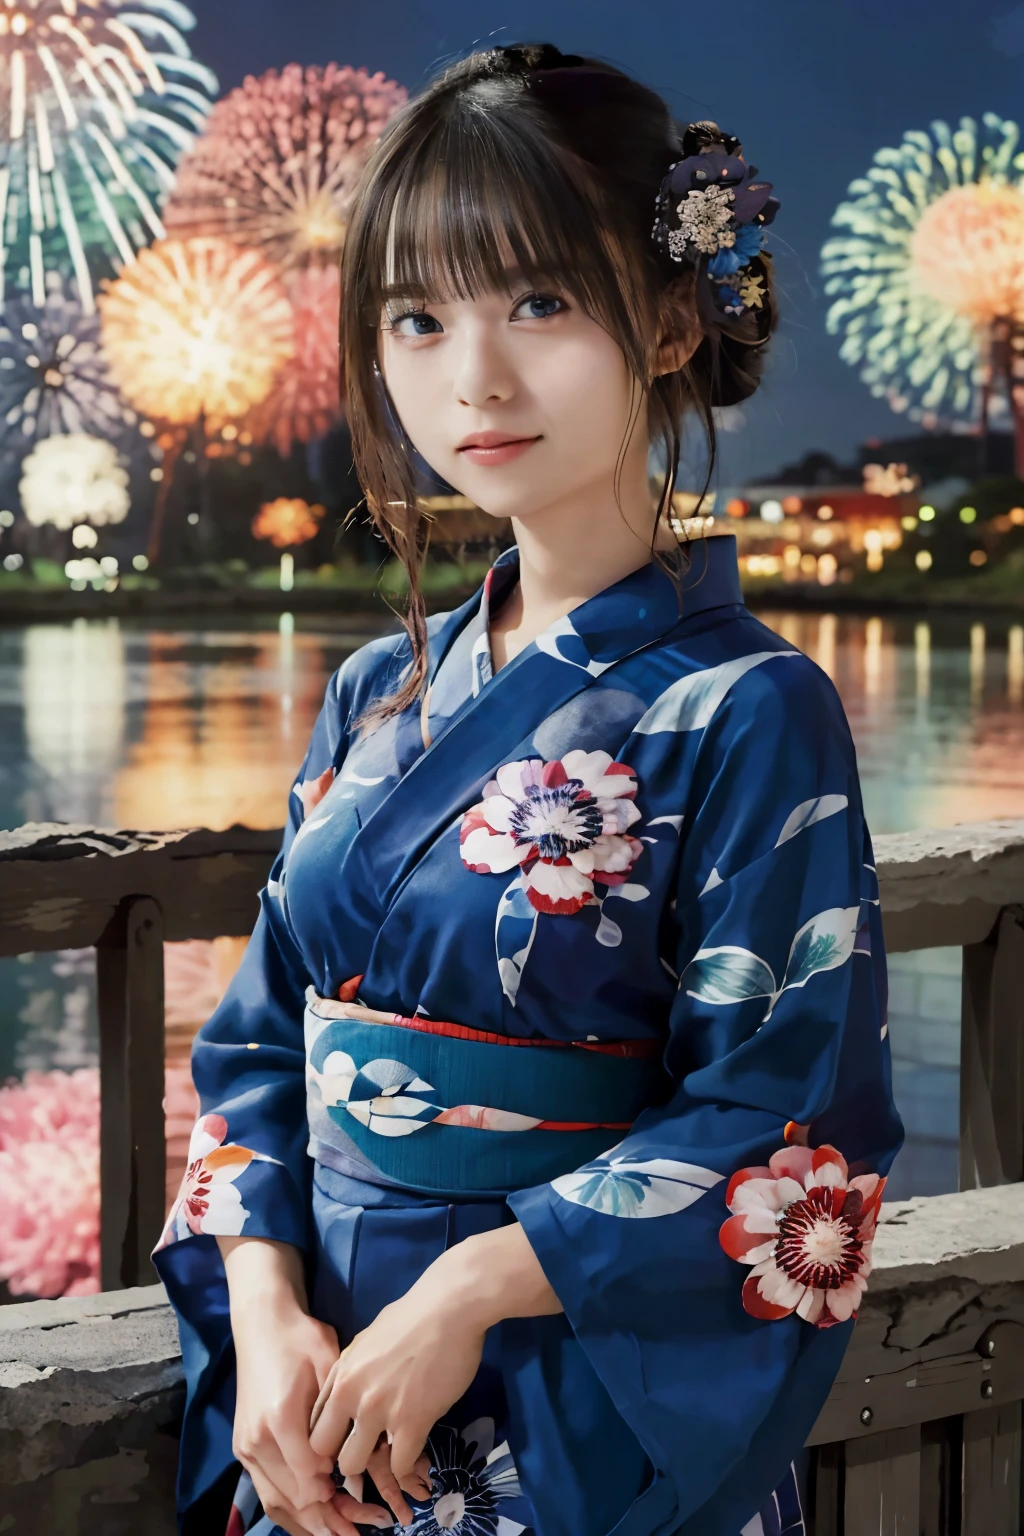 ((تحفة, أعلى جودة, تعريف فائق, عالي الدقة)), 4K. وحيد, فتاة جميلة, عيون مشرقة, عيون مثالية, أخت اليابان الجميلة, الموضوع الأزرق, يوكاتا, الخلفية هي الألعاب النارية الليلية